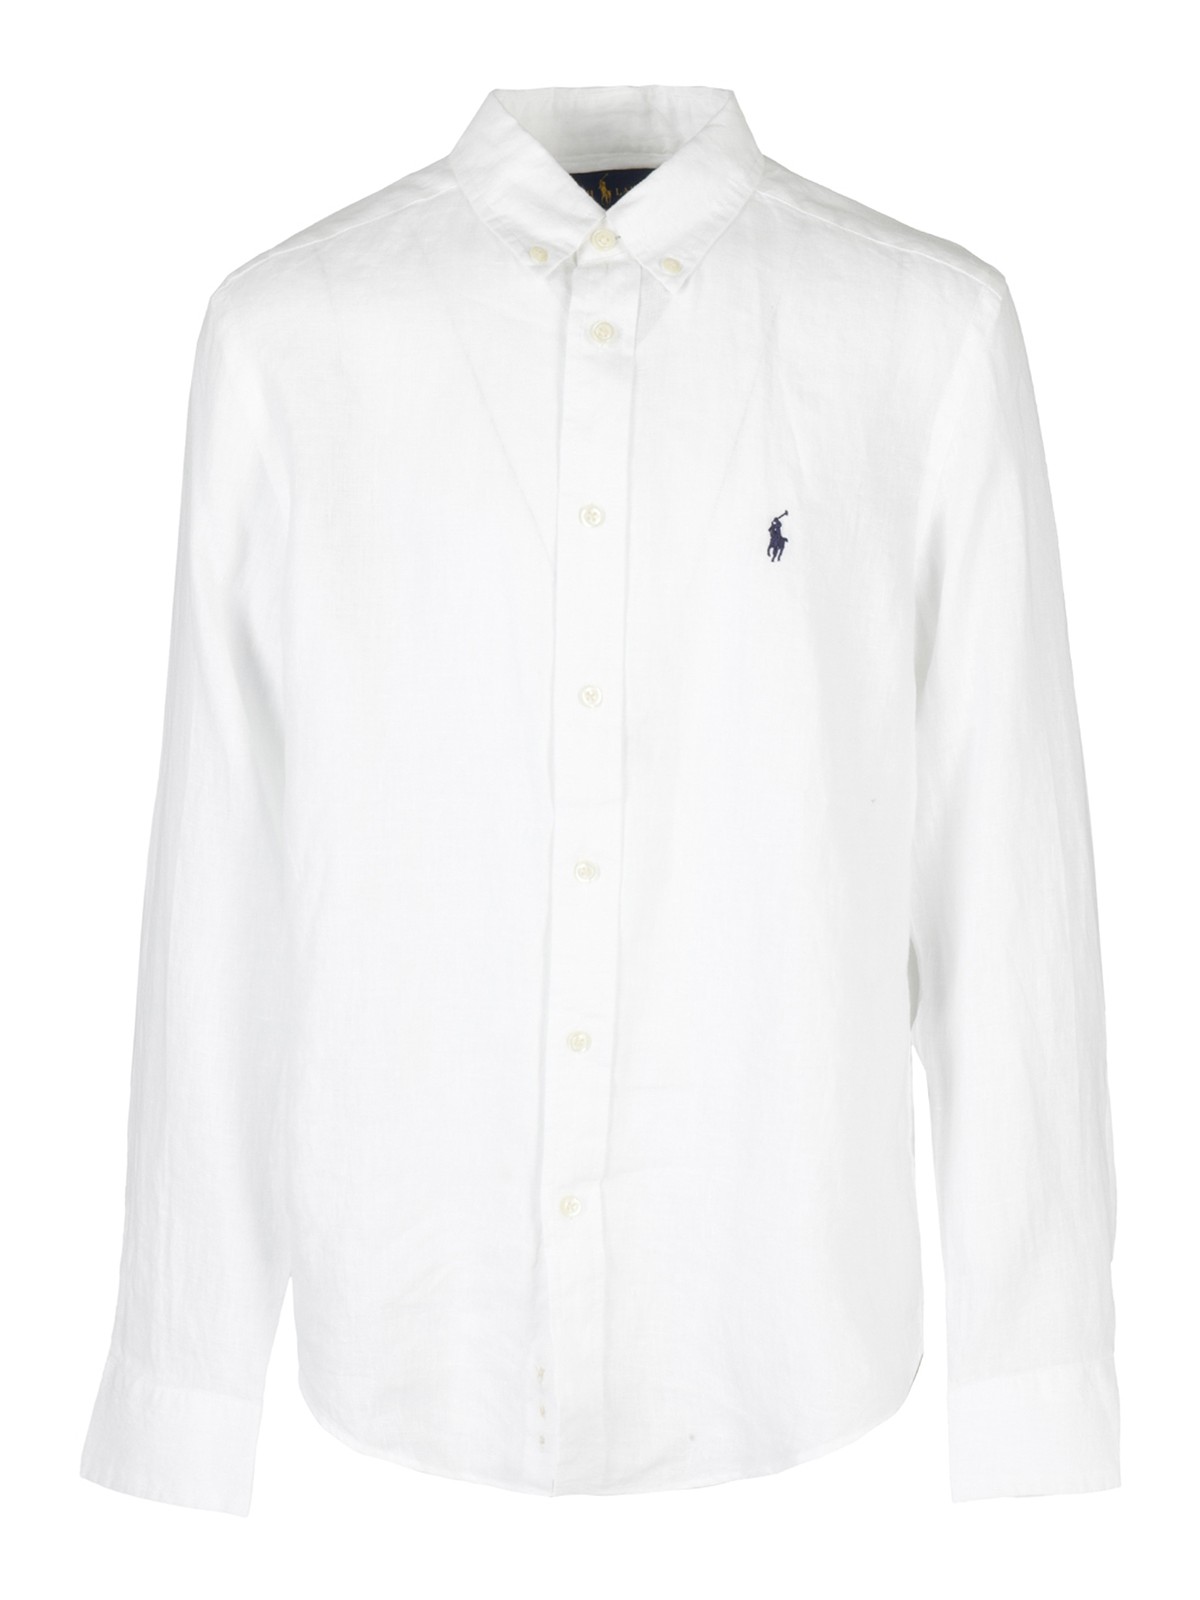 Shirts Polo Ralph Lauren - Linen shirt - 323832109001 | iKRIX.com